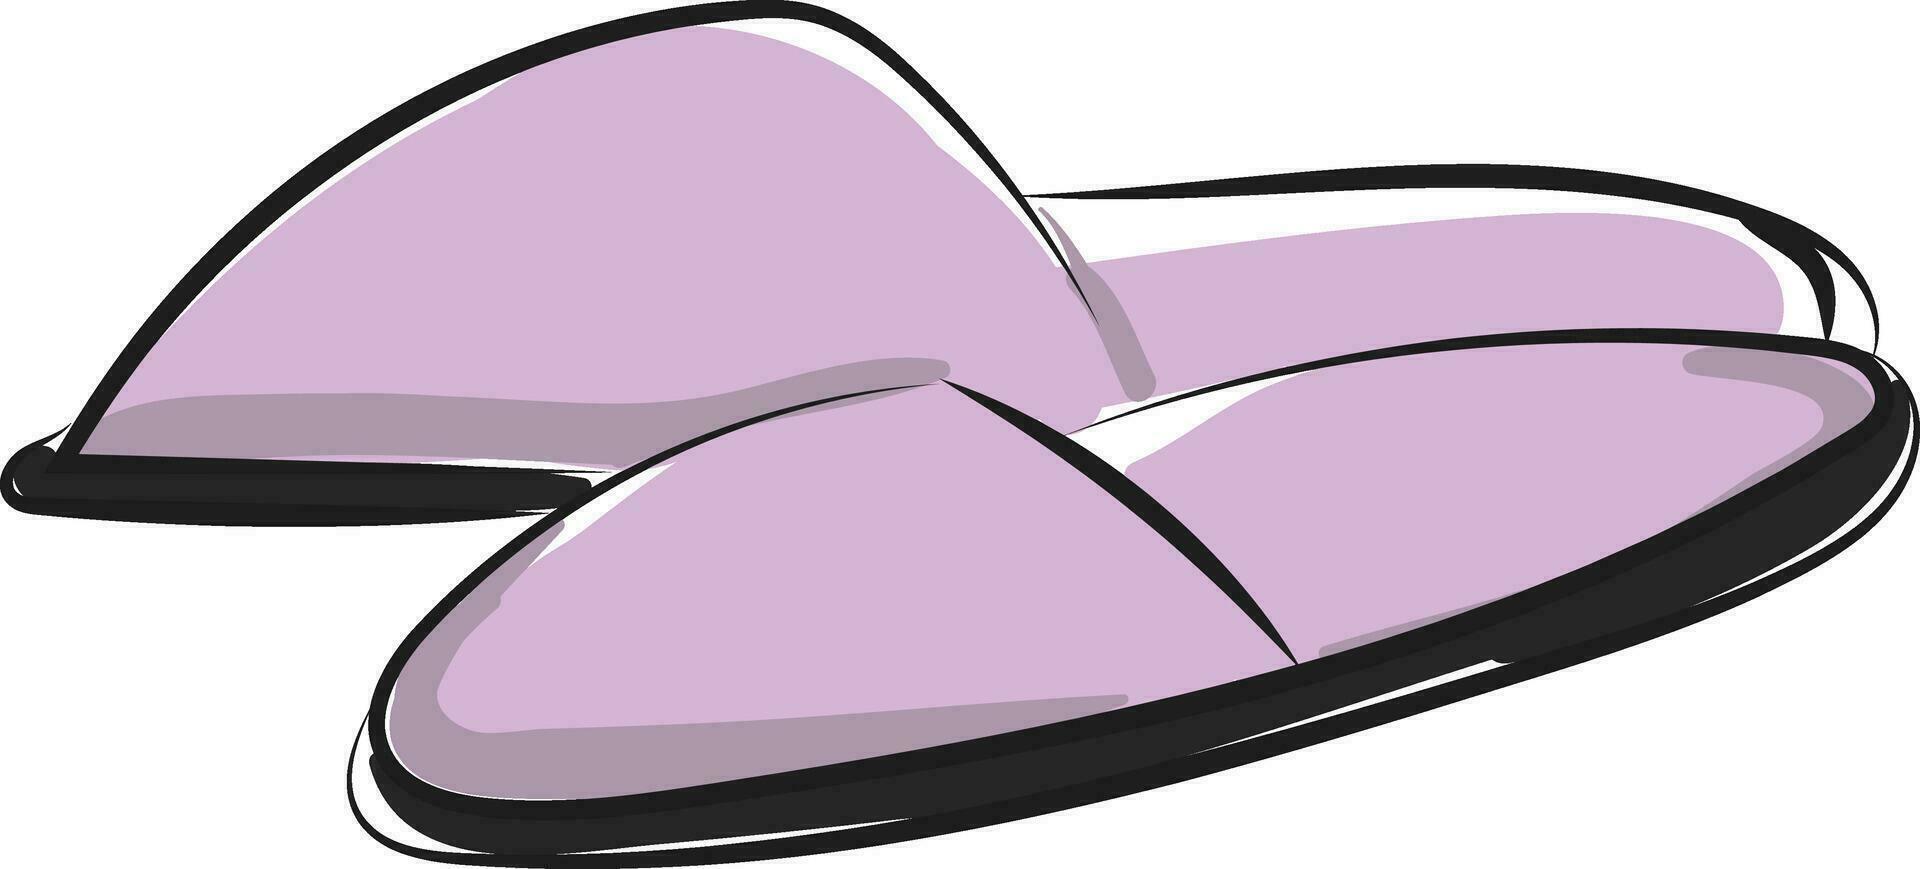 cerrado dedo del pie unisexo interior zapatillasalfombra zapatillasdormitorio zapatilla dar la vuelta fracasos vector o color ilustración